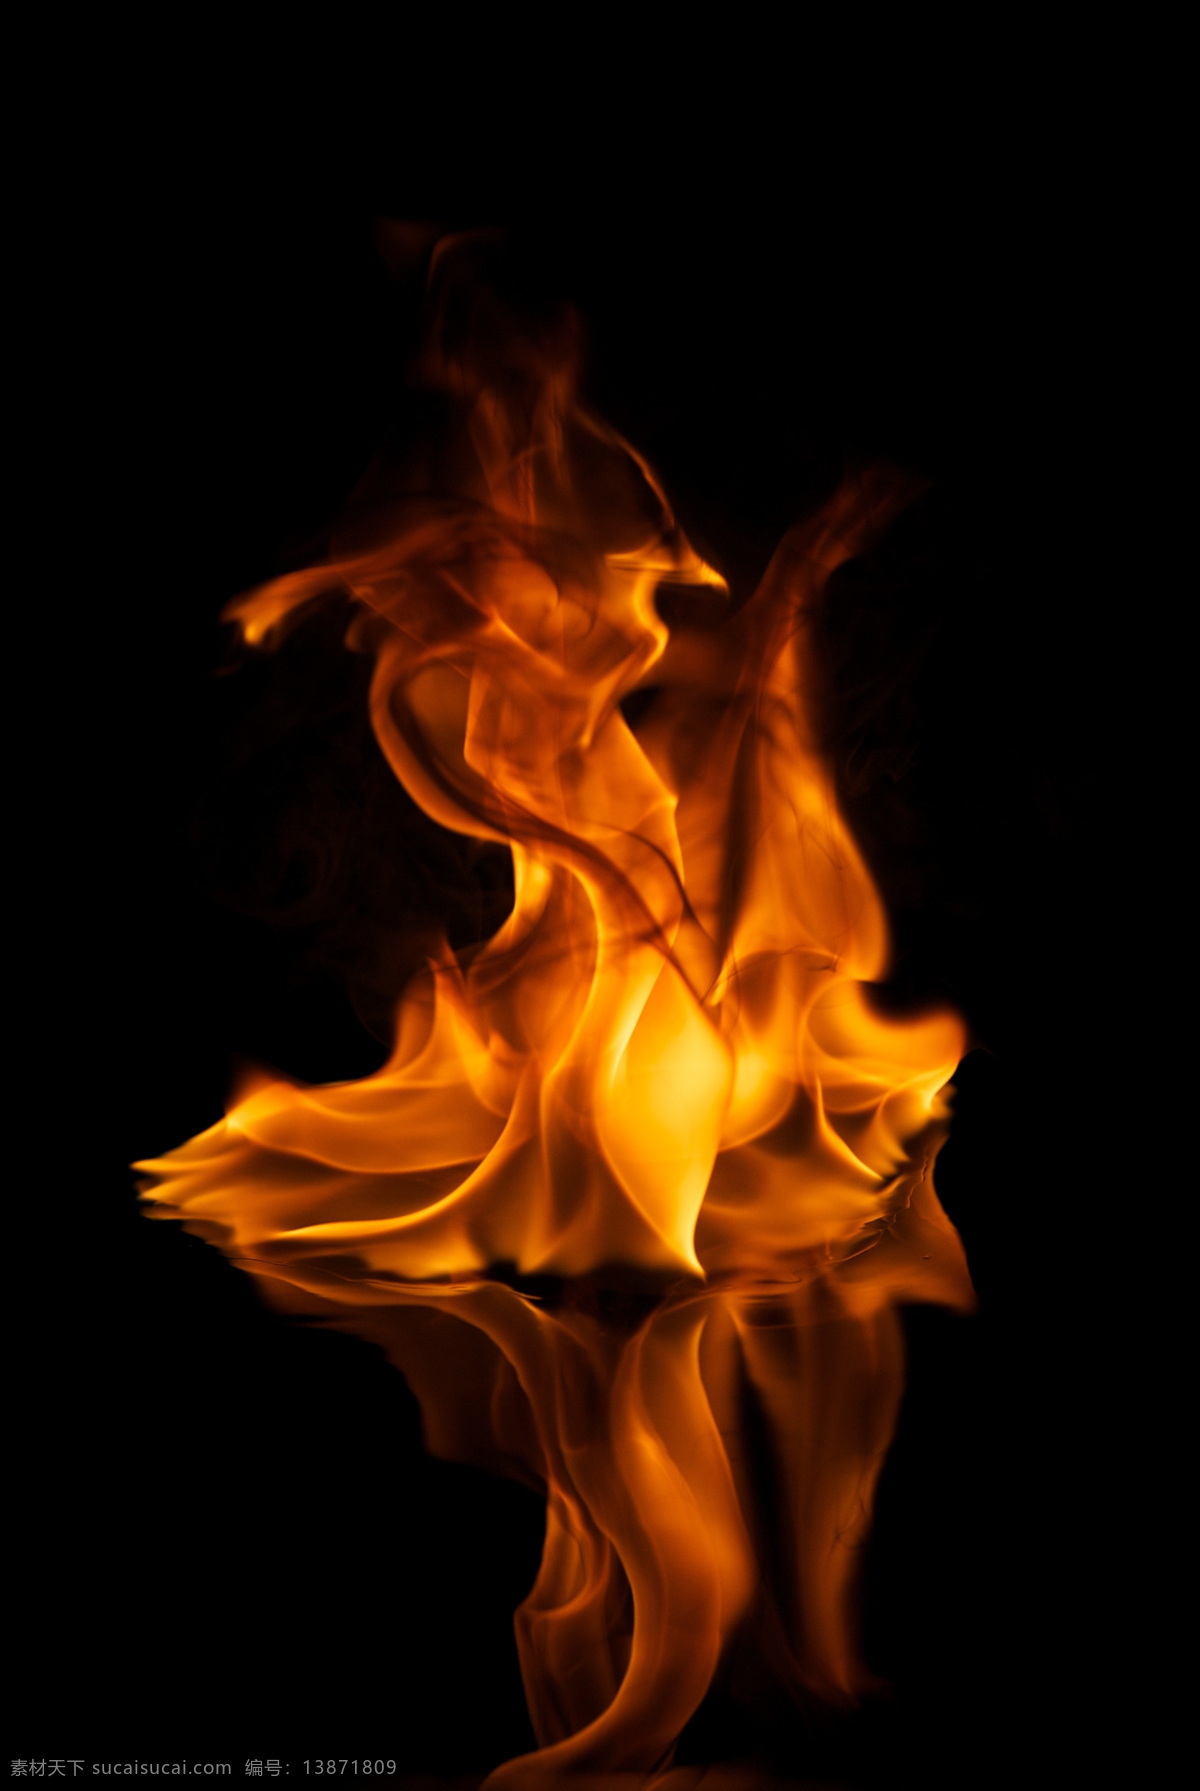 水面上的火 火 篝火 火苗 火焰 背景 黑色 晚上 大伙 柴火 燃烧 炭火 烤火 火焰素材 火素材 篝火素材 生活百科 生活素材